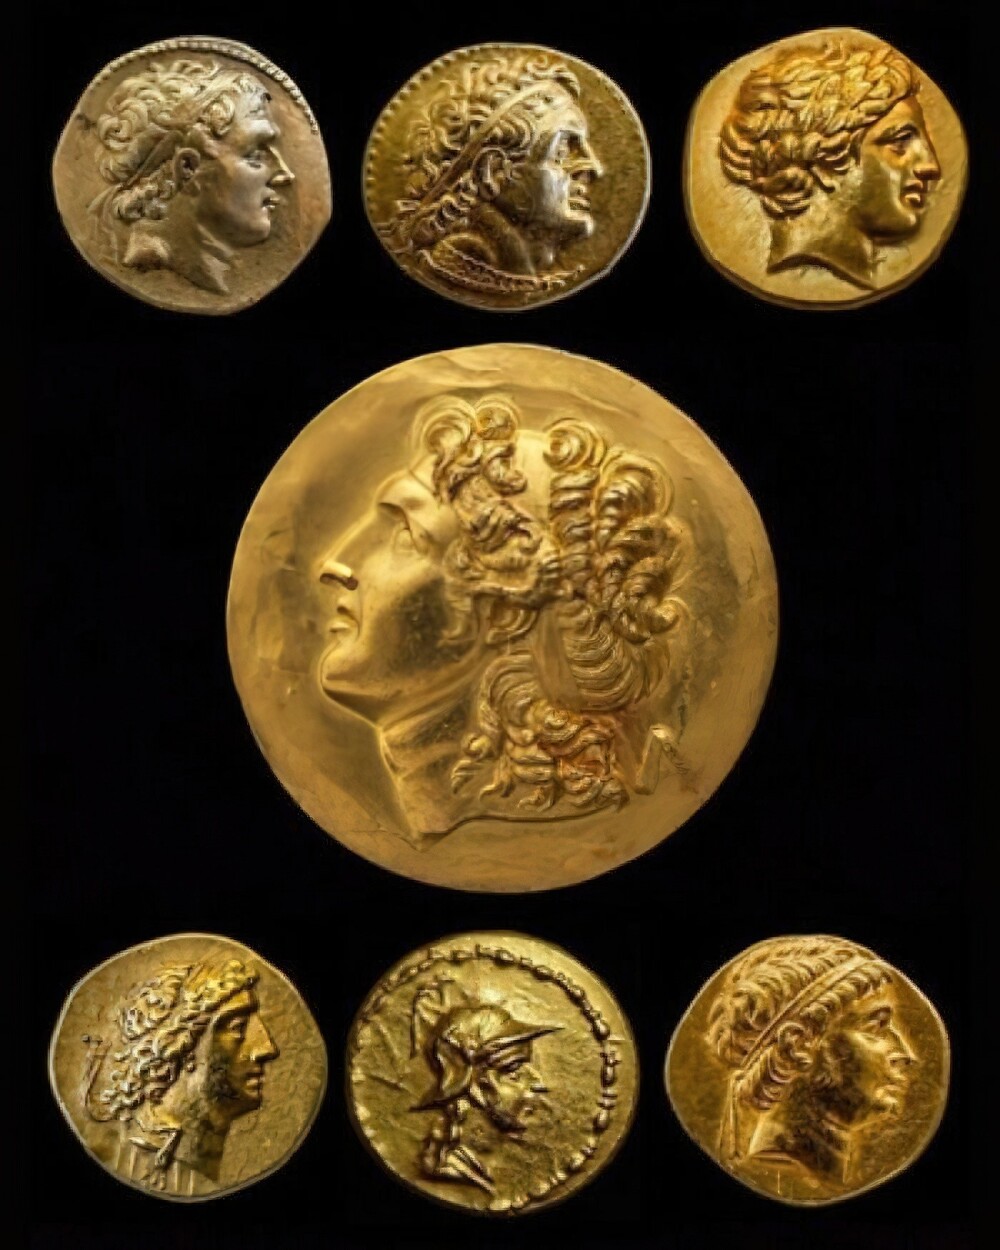 24. На медальоне изображен Александр Македонский, а золотые монеты использовались эллинистическими царями во время их правления